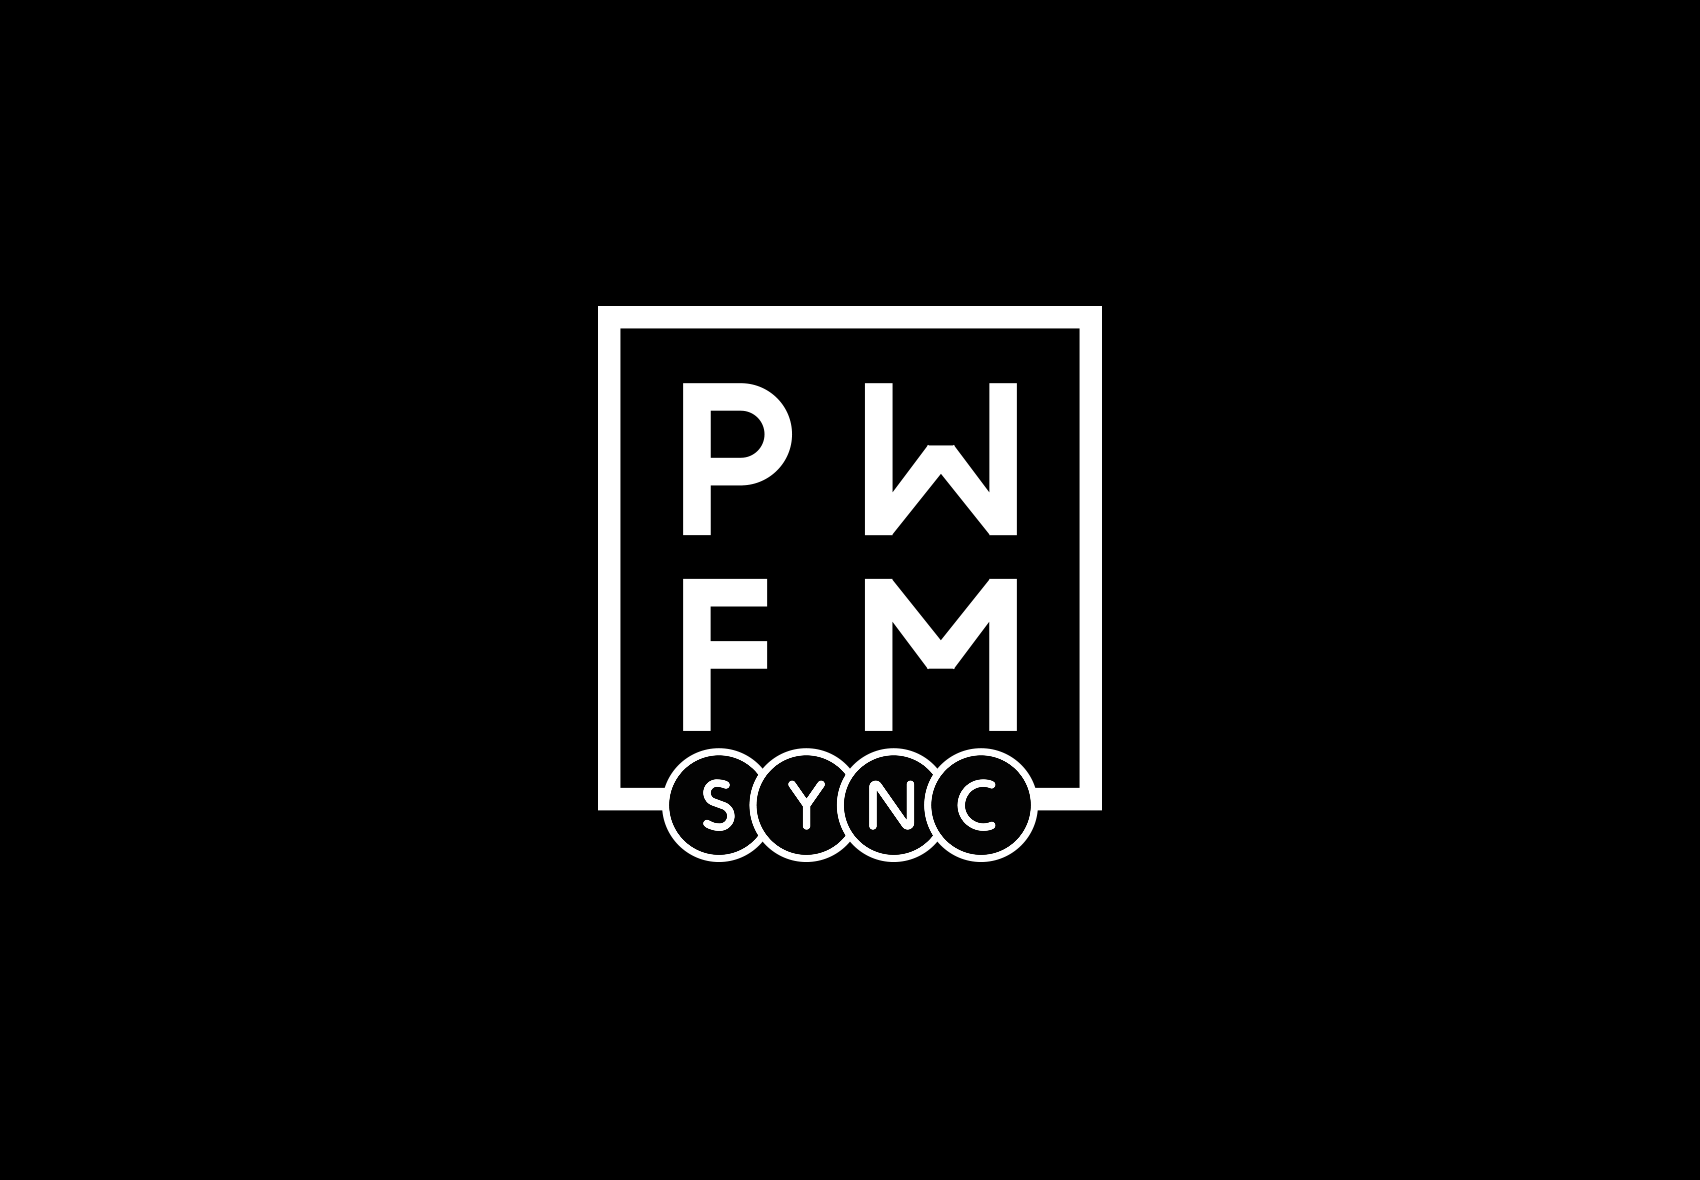 PWFM-SYNC-1